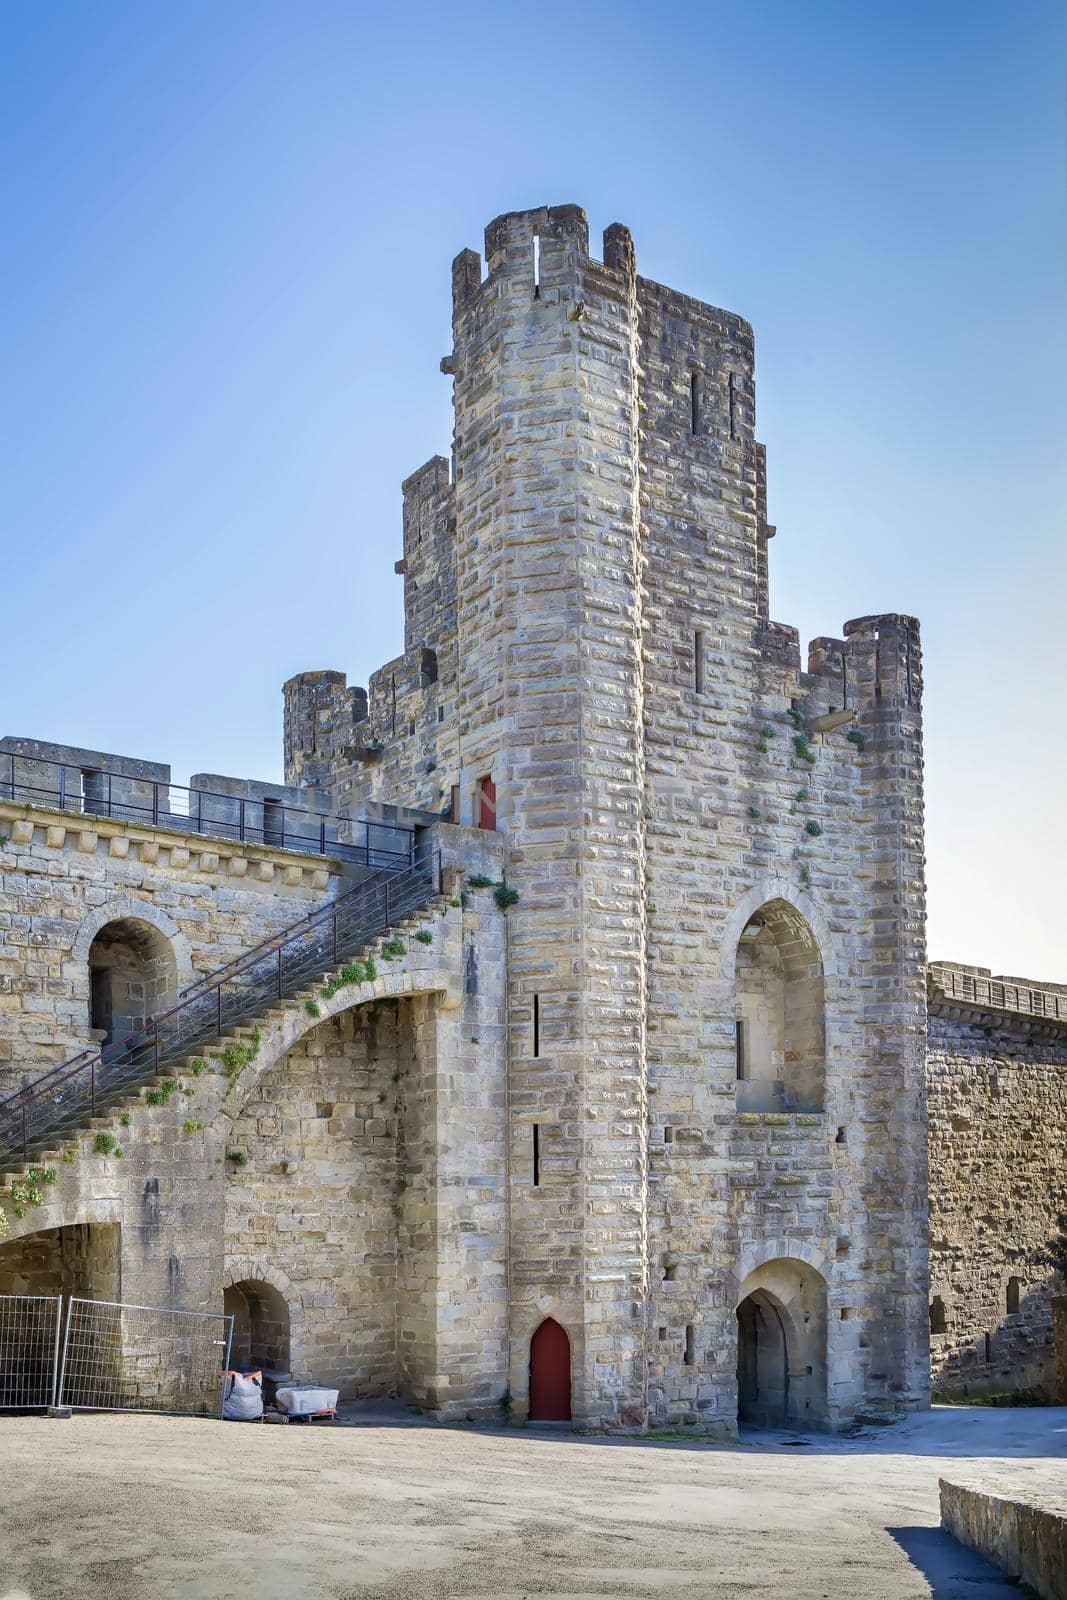 Cite de Carcassonne, France by borisb17